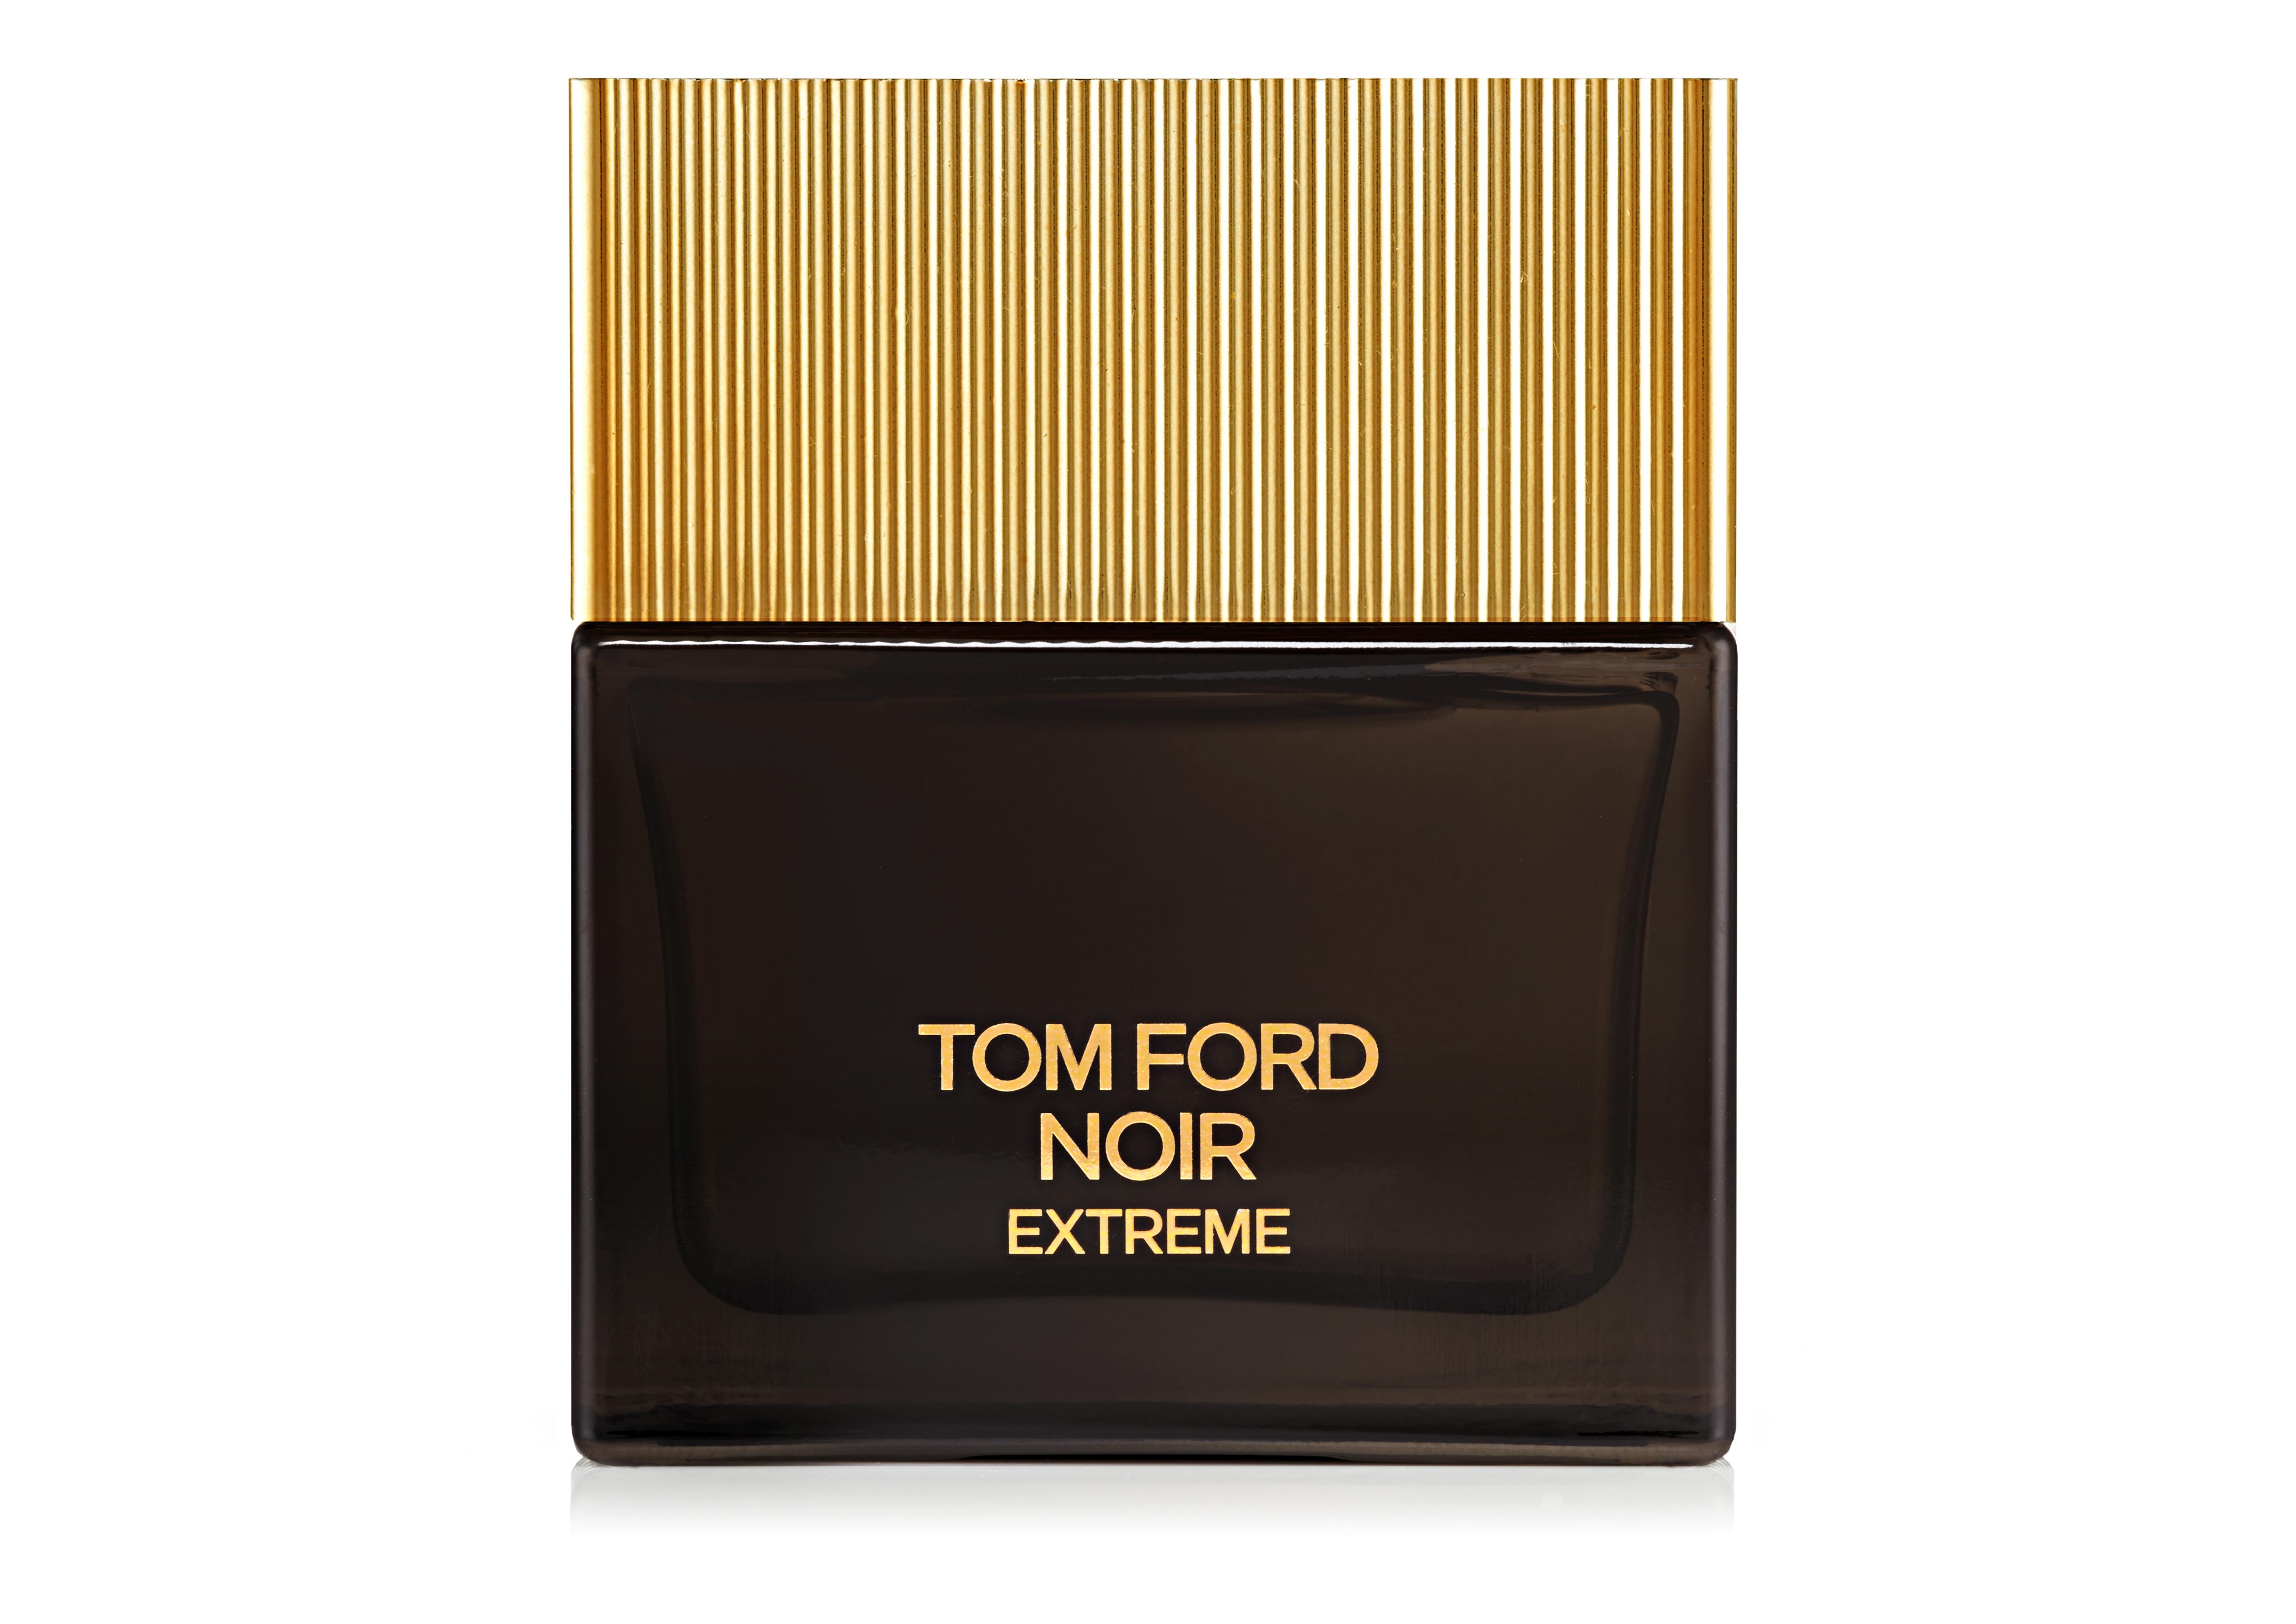 Tom Ford Tom Ford Noir Extreme Null